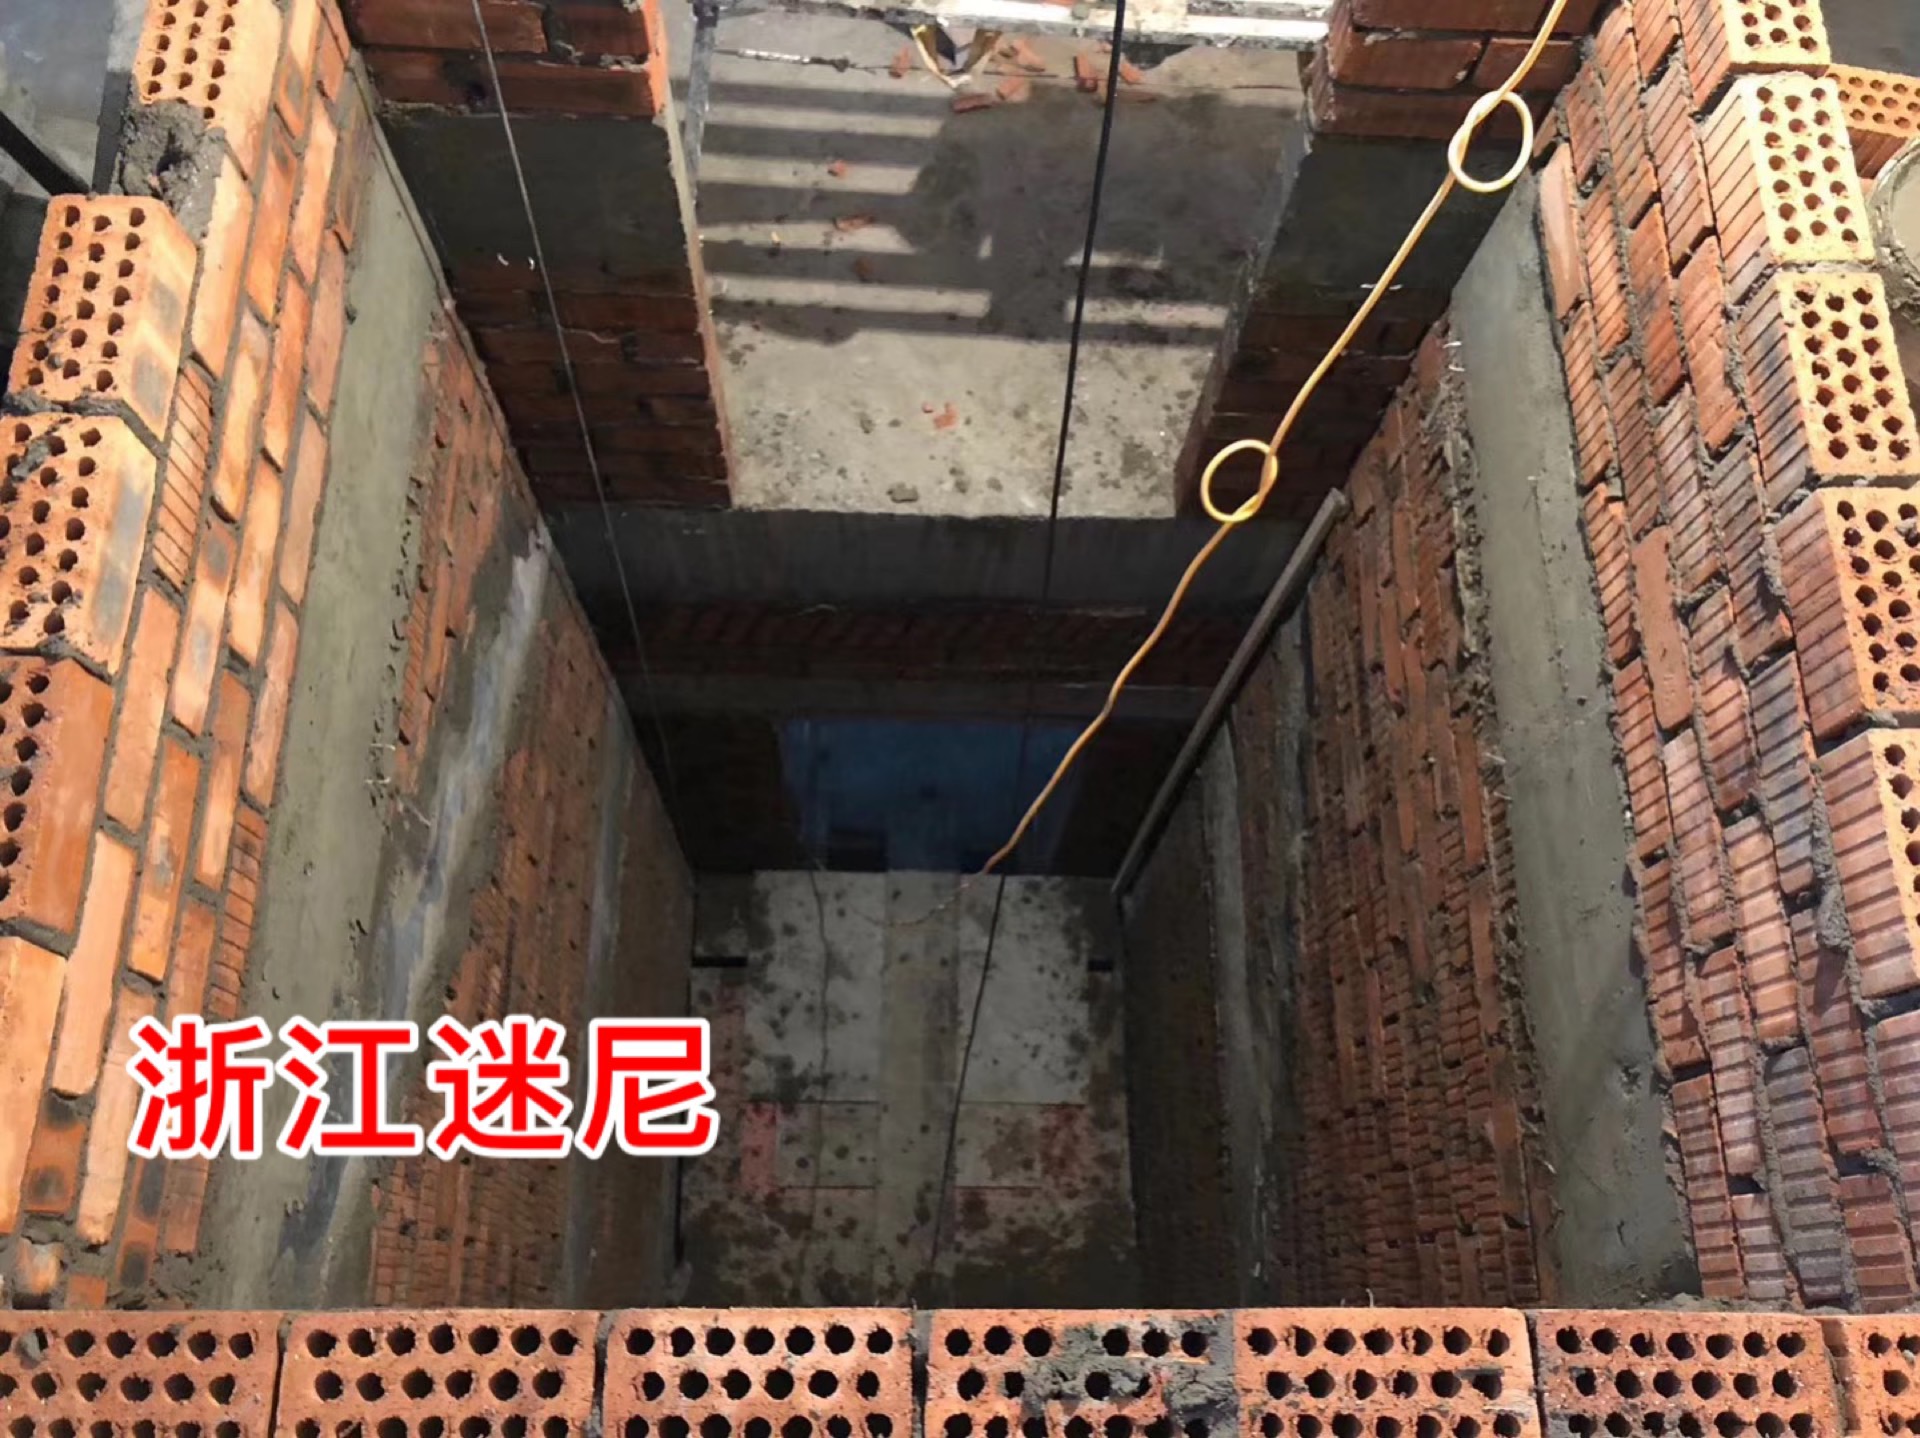 圈梁—井道后墙,左墙,右墙从底层地面开始向上每1500mm高度或者每半层